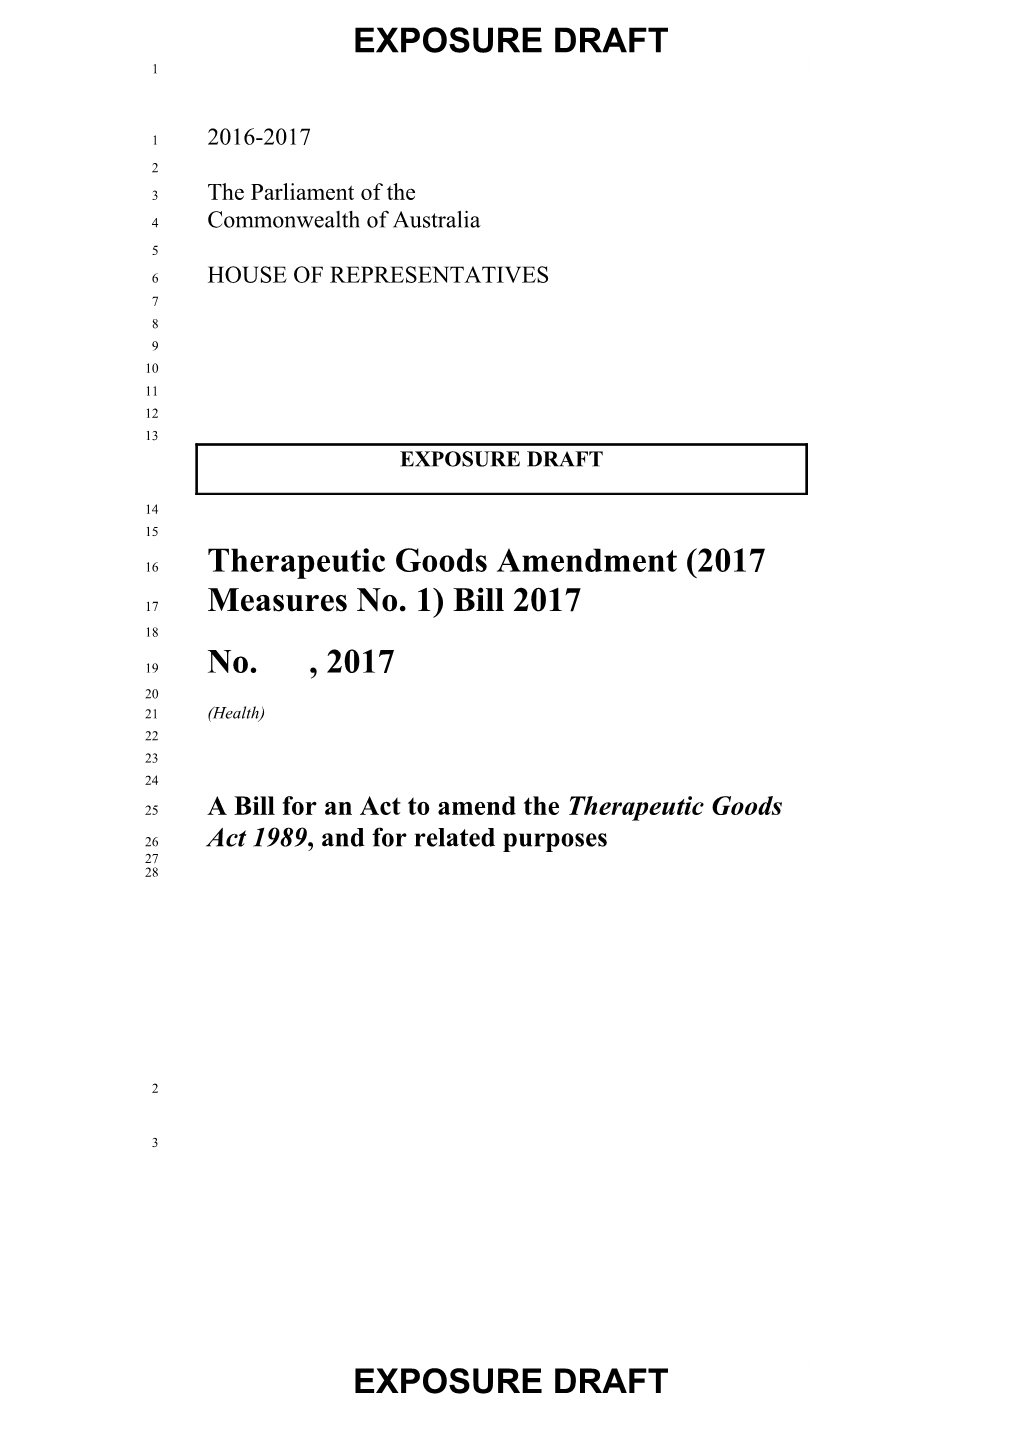 Therapeutic Goods Amendment (2017 Measures No. 1) Bill 2017